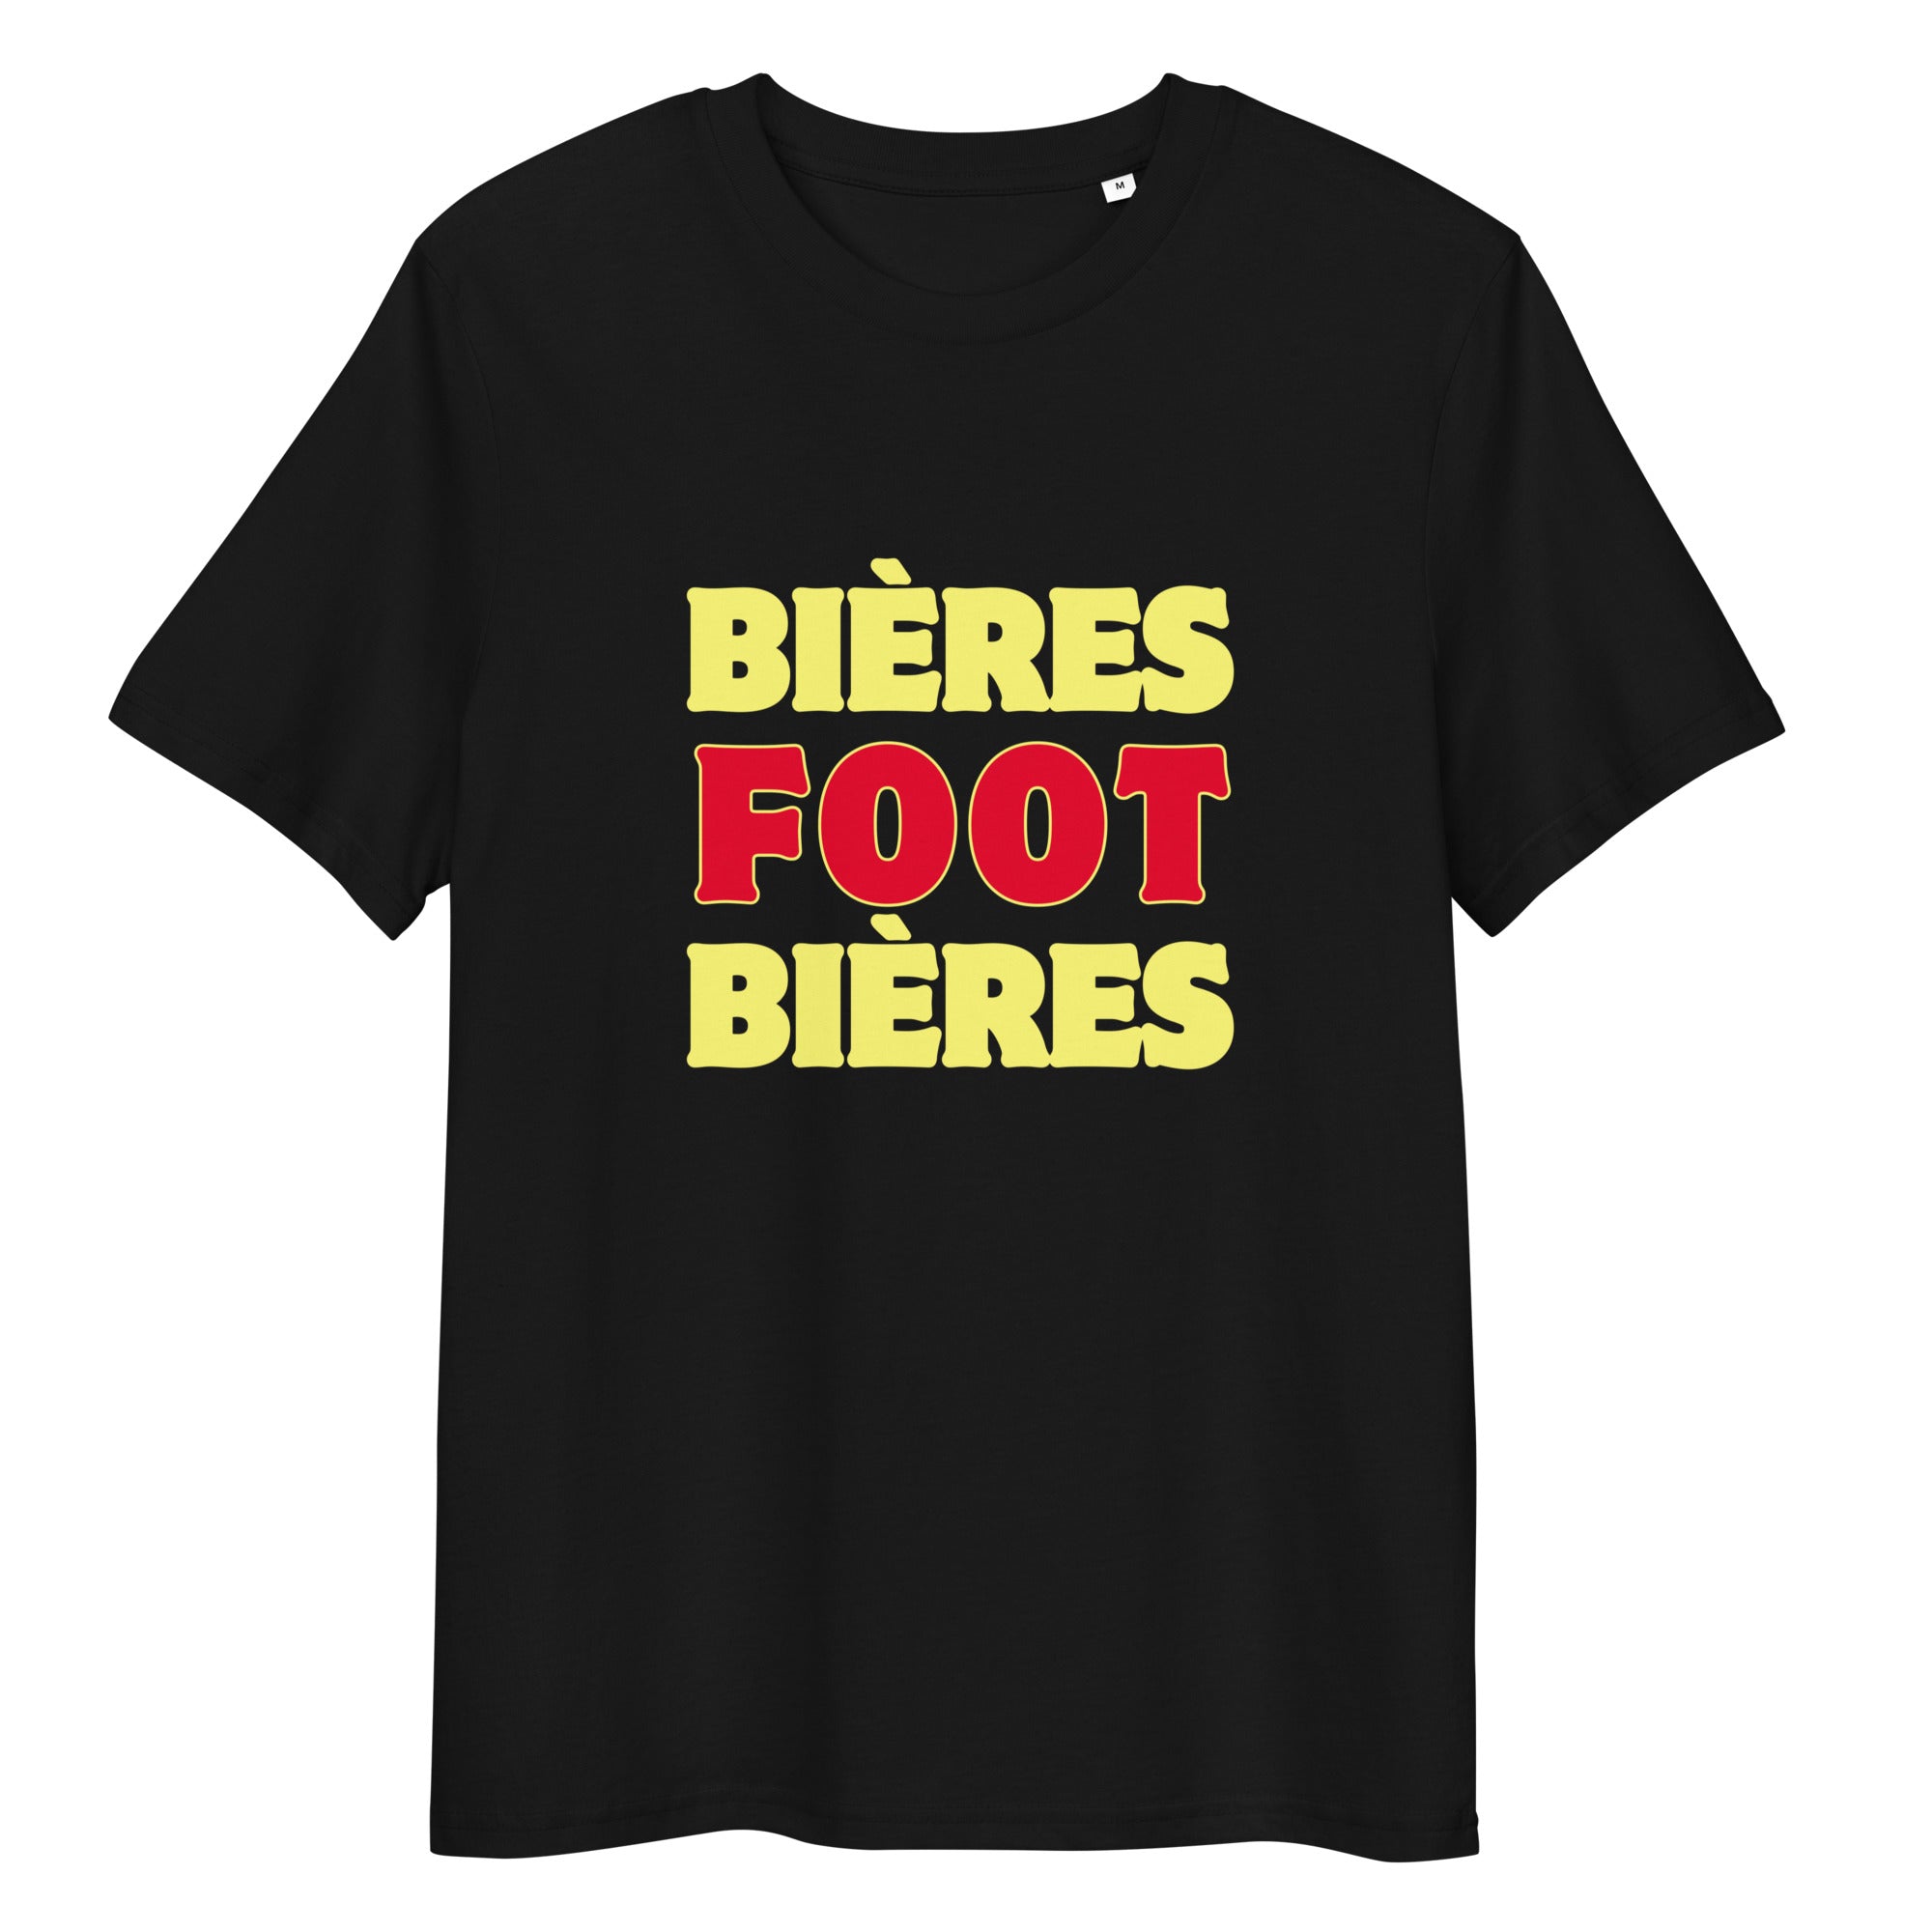 T-shirt supporter belge - "Bières foot bières"